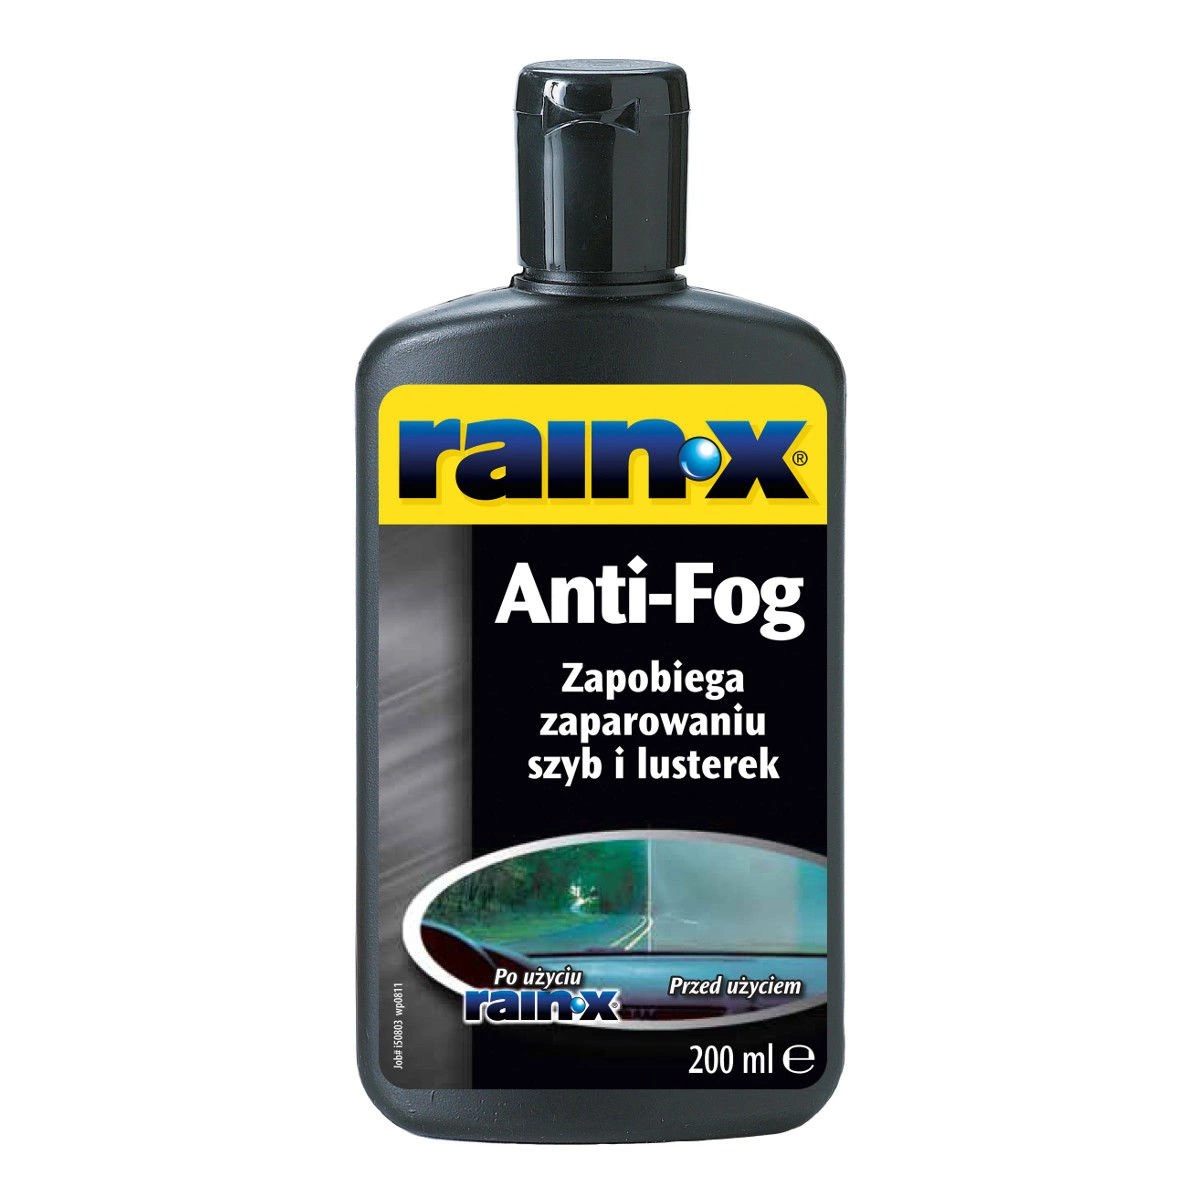 Rain-X Anti-Fog antypara - zapobiega zaparowaniu szyb 200ml • autokosmetyki  •